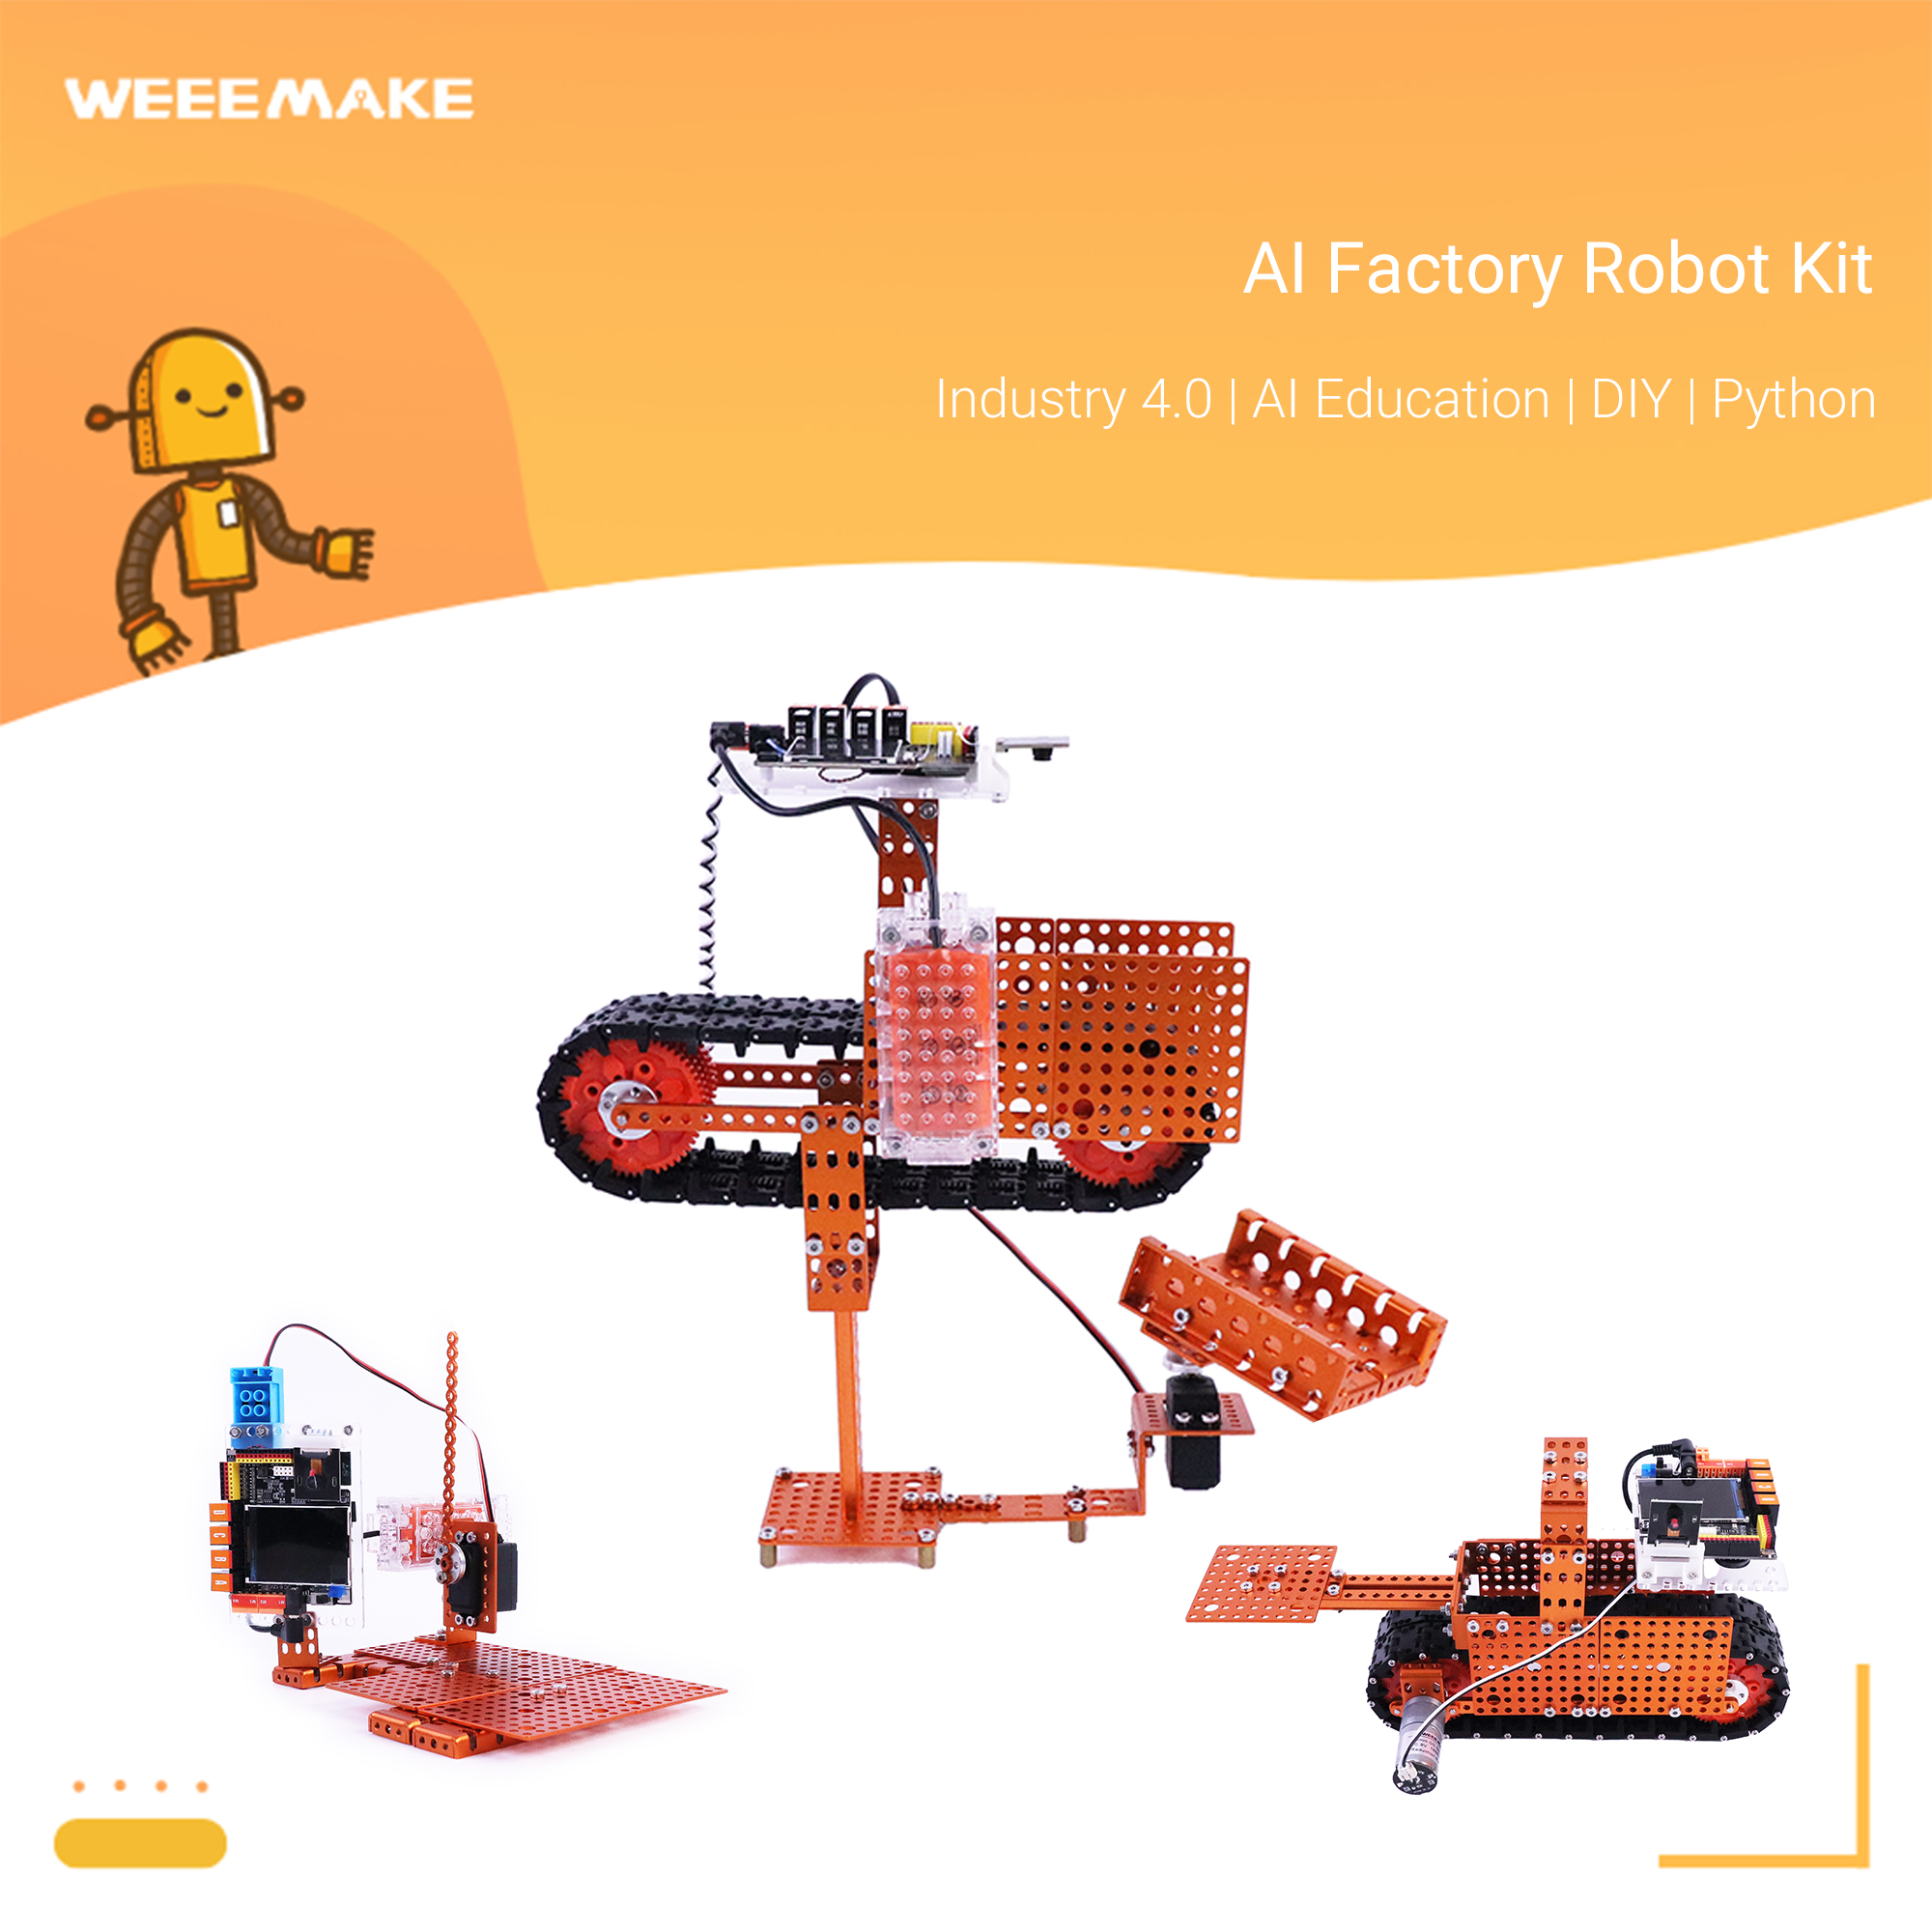 AI Factory Robot Kit - Serie de educación de robots AI